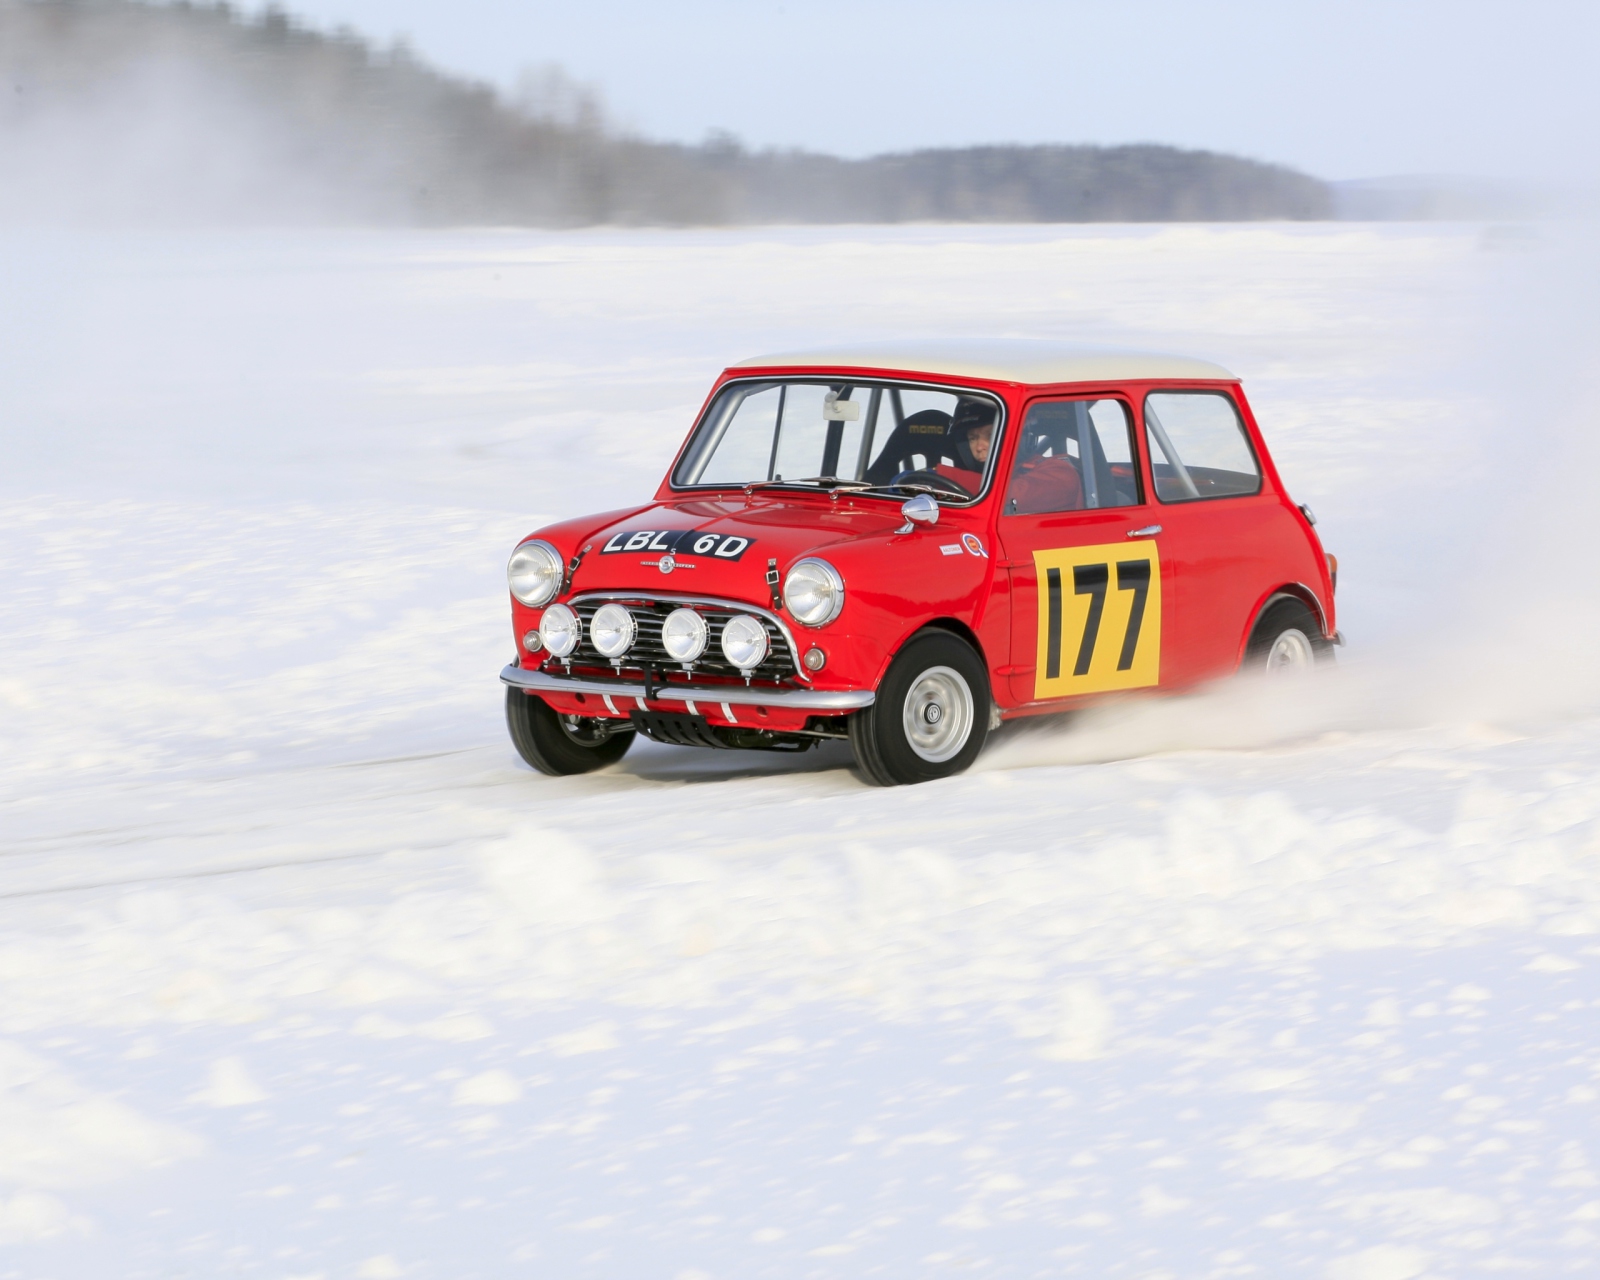 Das Red Mini In Snow Wallpaper 1600x1280